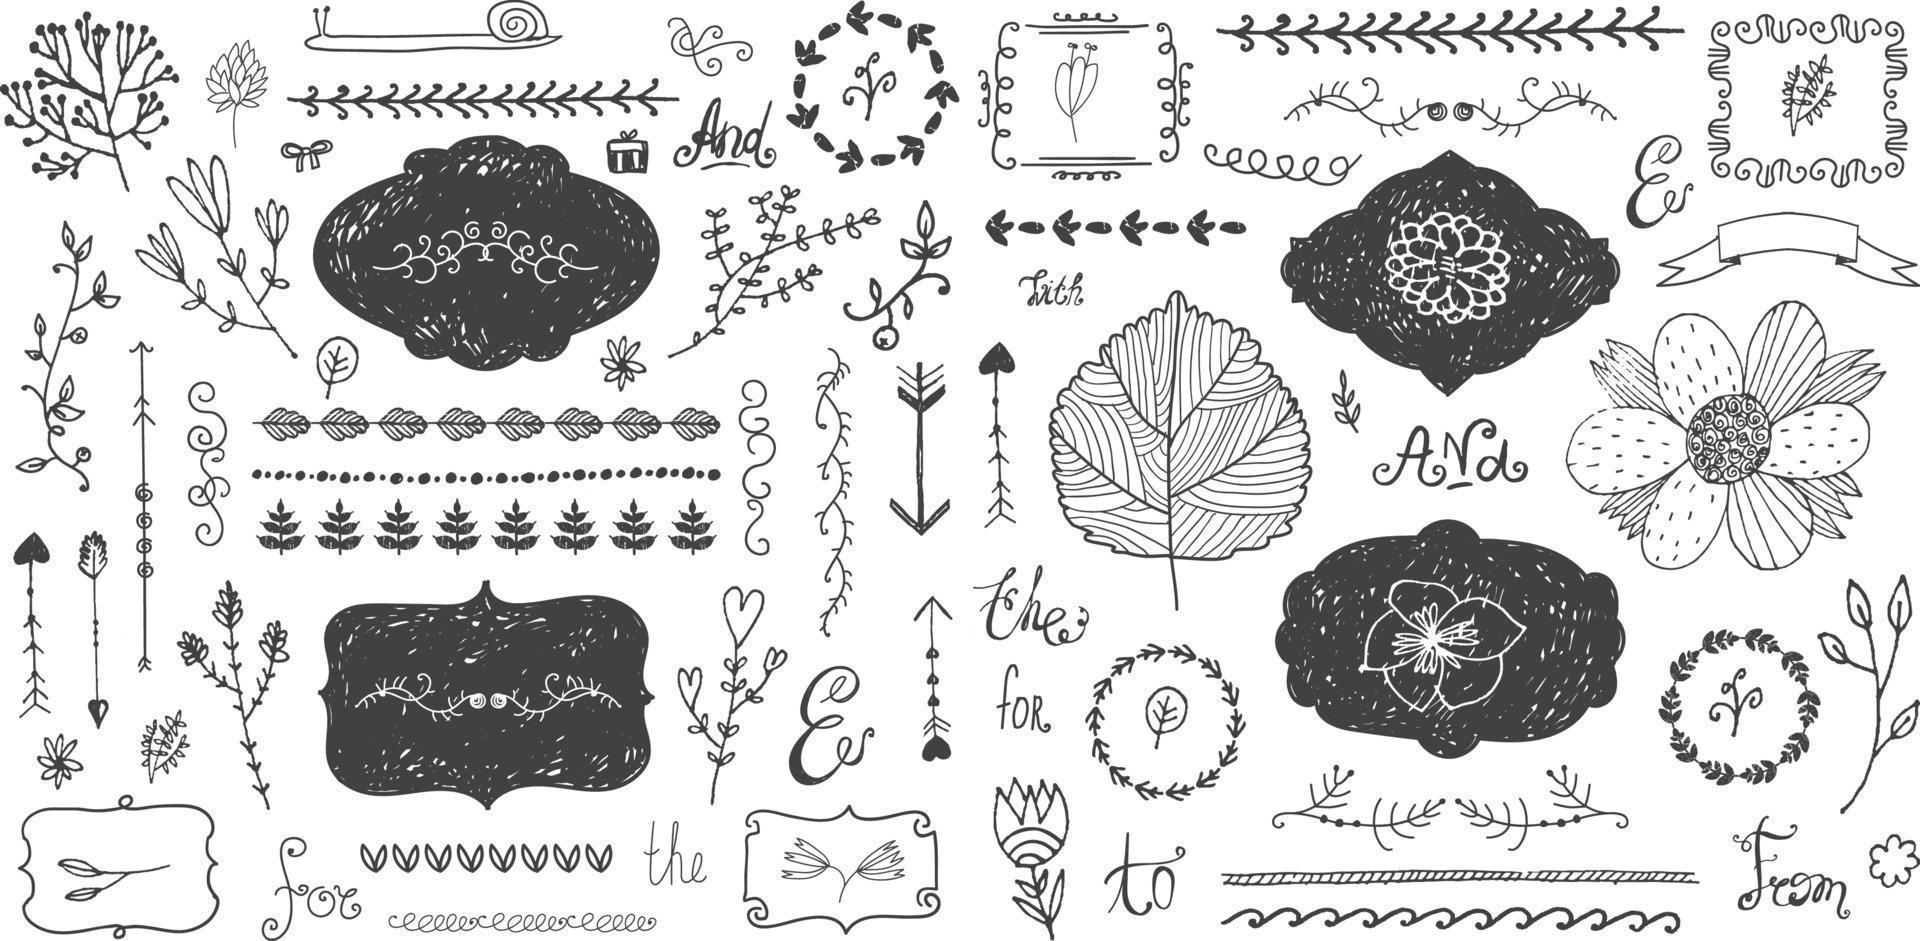 vektor uppsättning av blommig dekor, handritade doodle ramar, avdelare, gränser, element. isolerat. romantisk vintage samling